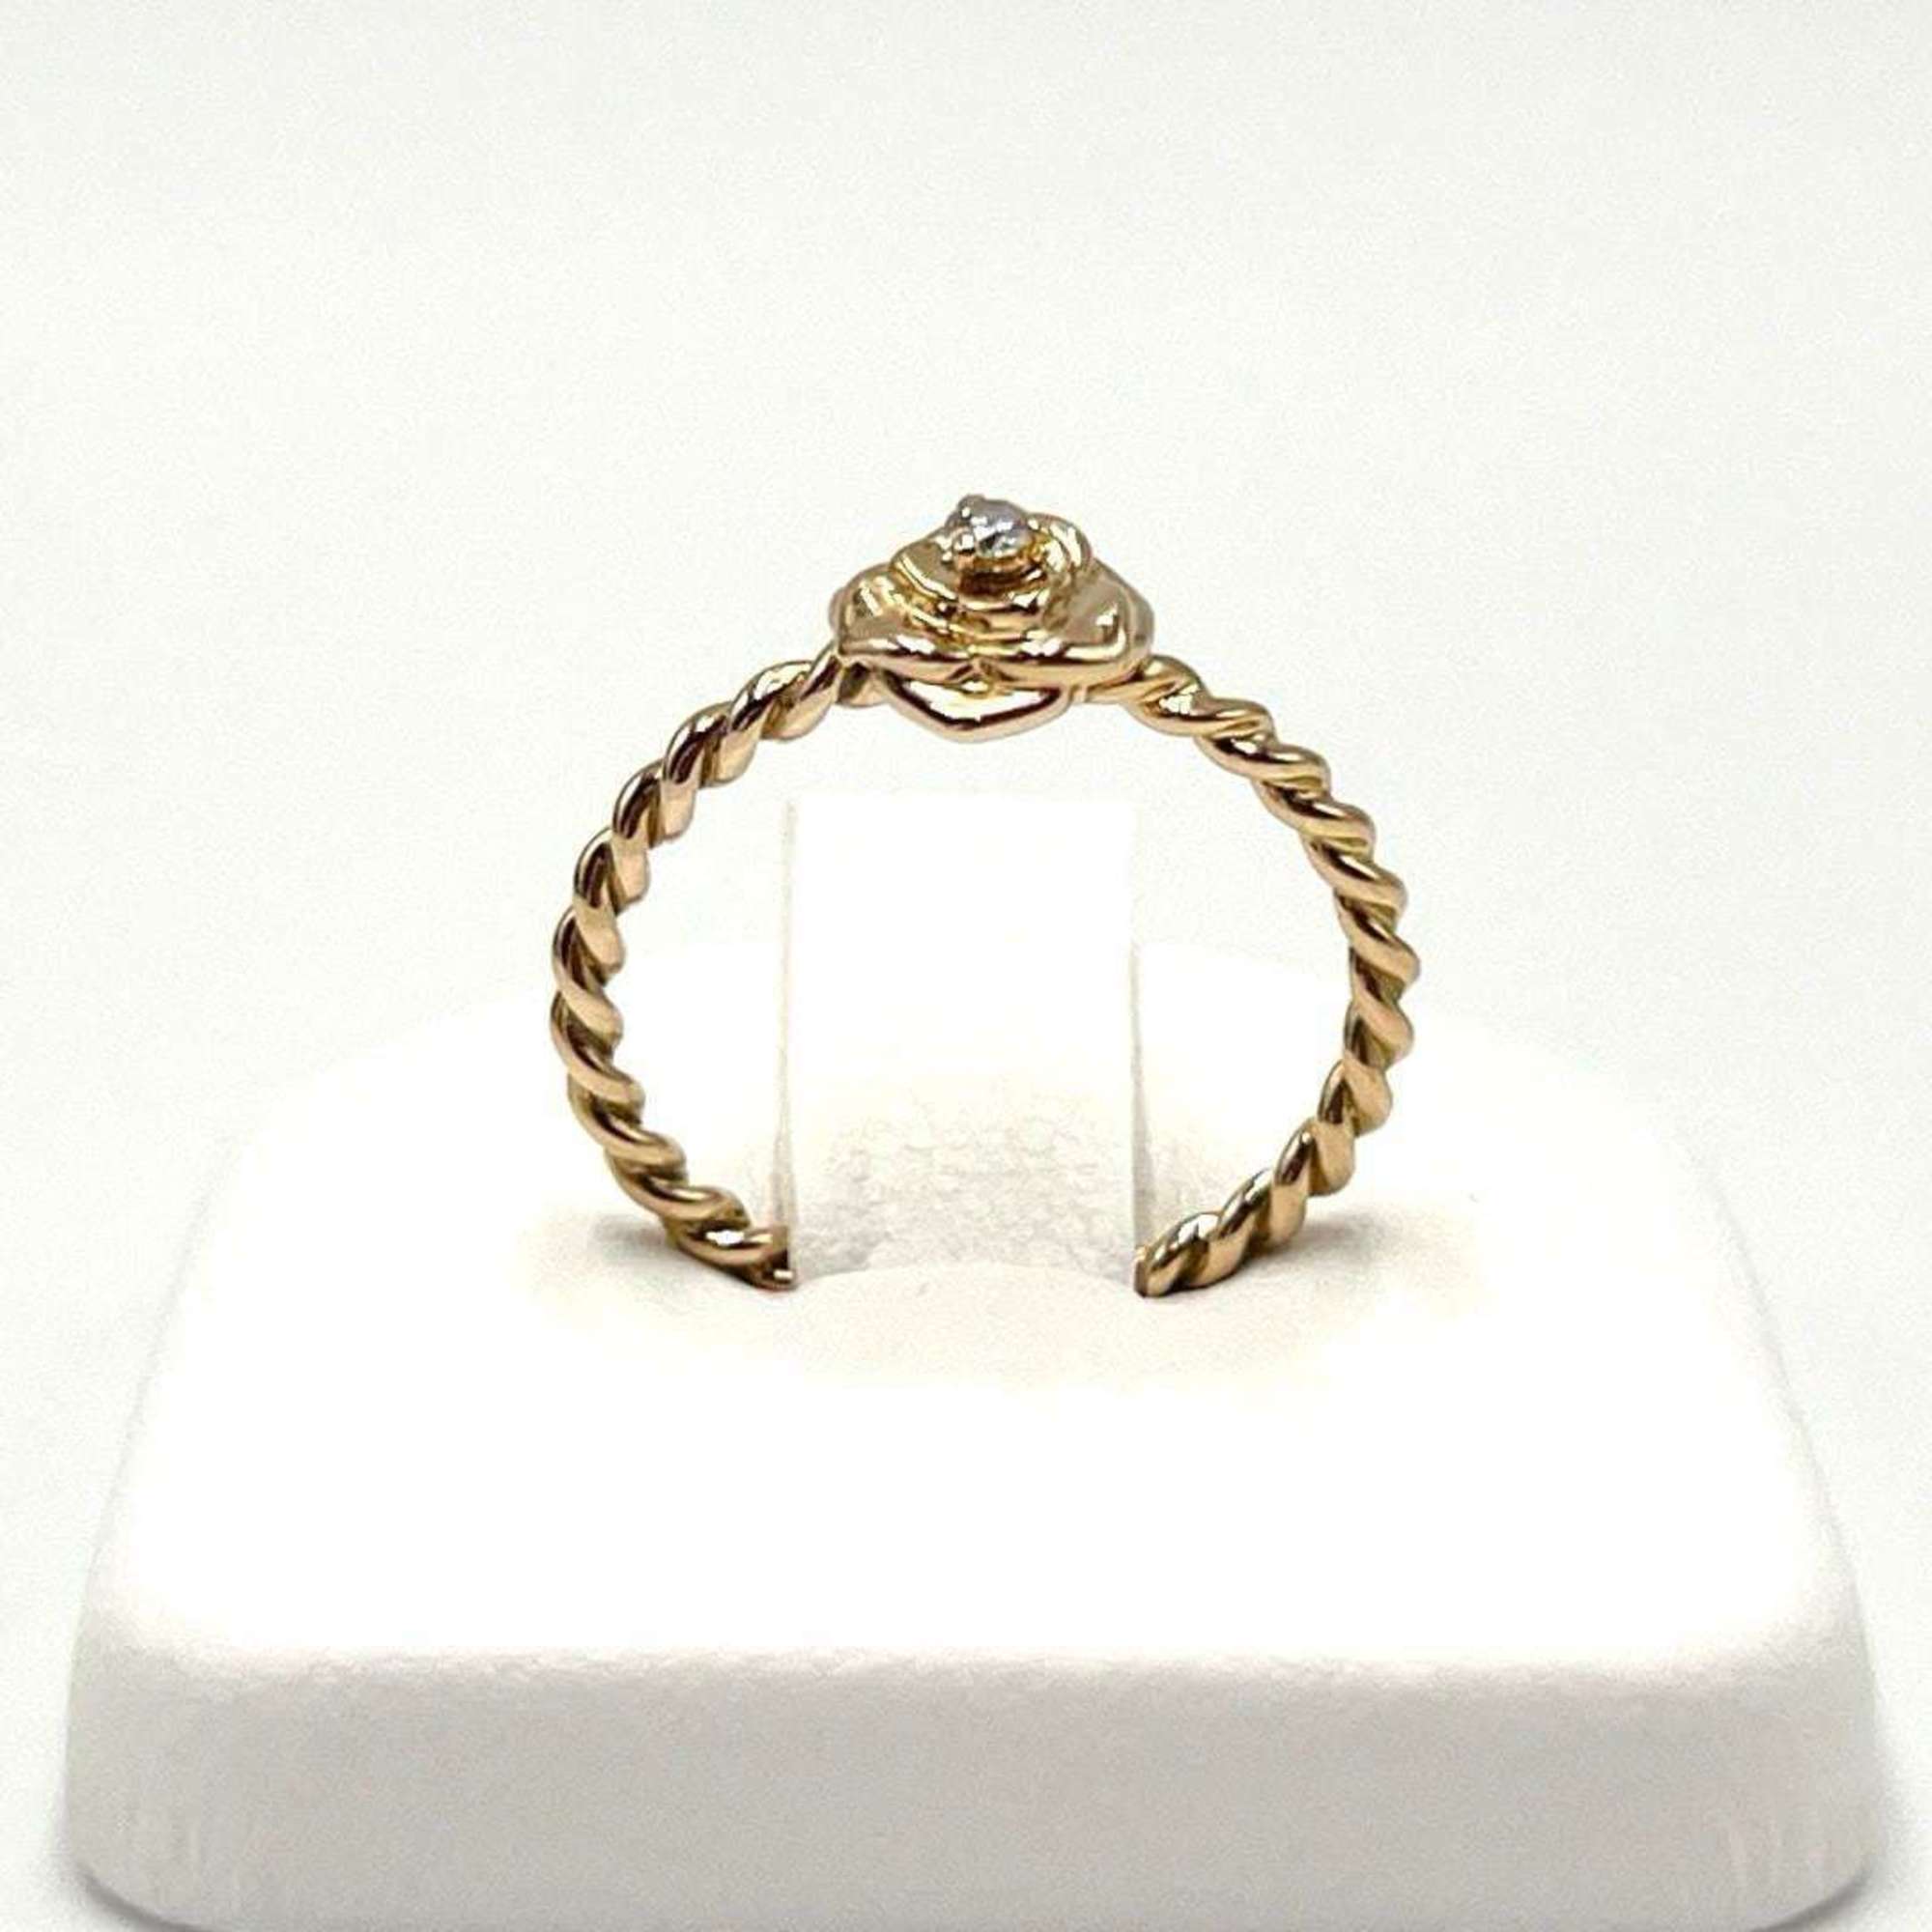 Piaget Women's Rose Ring, 18K Pink Gold, Diamond